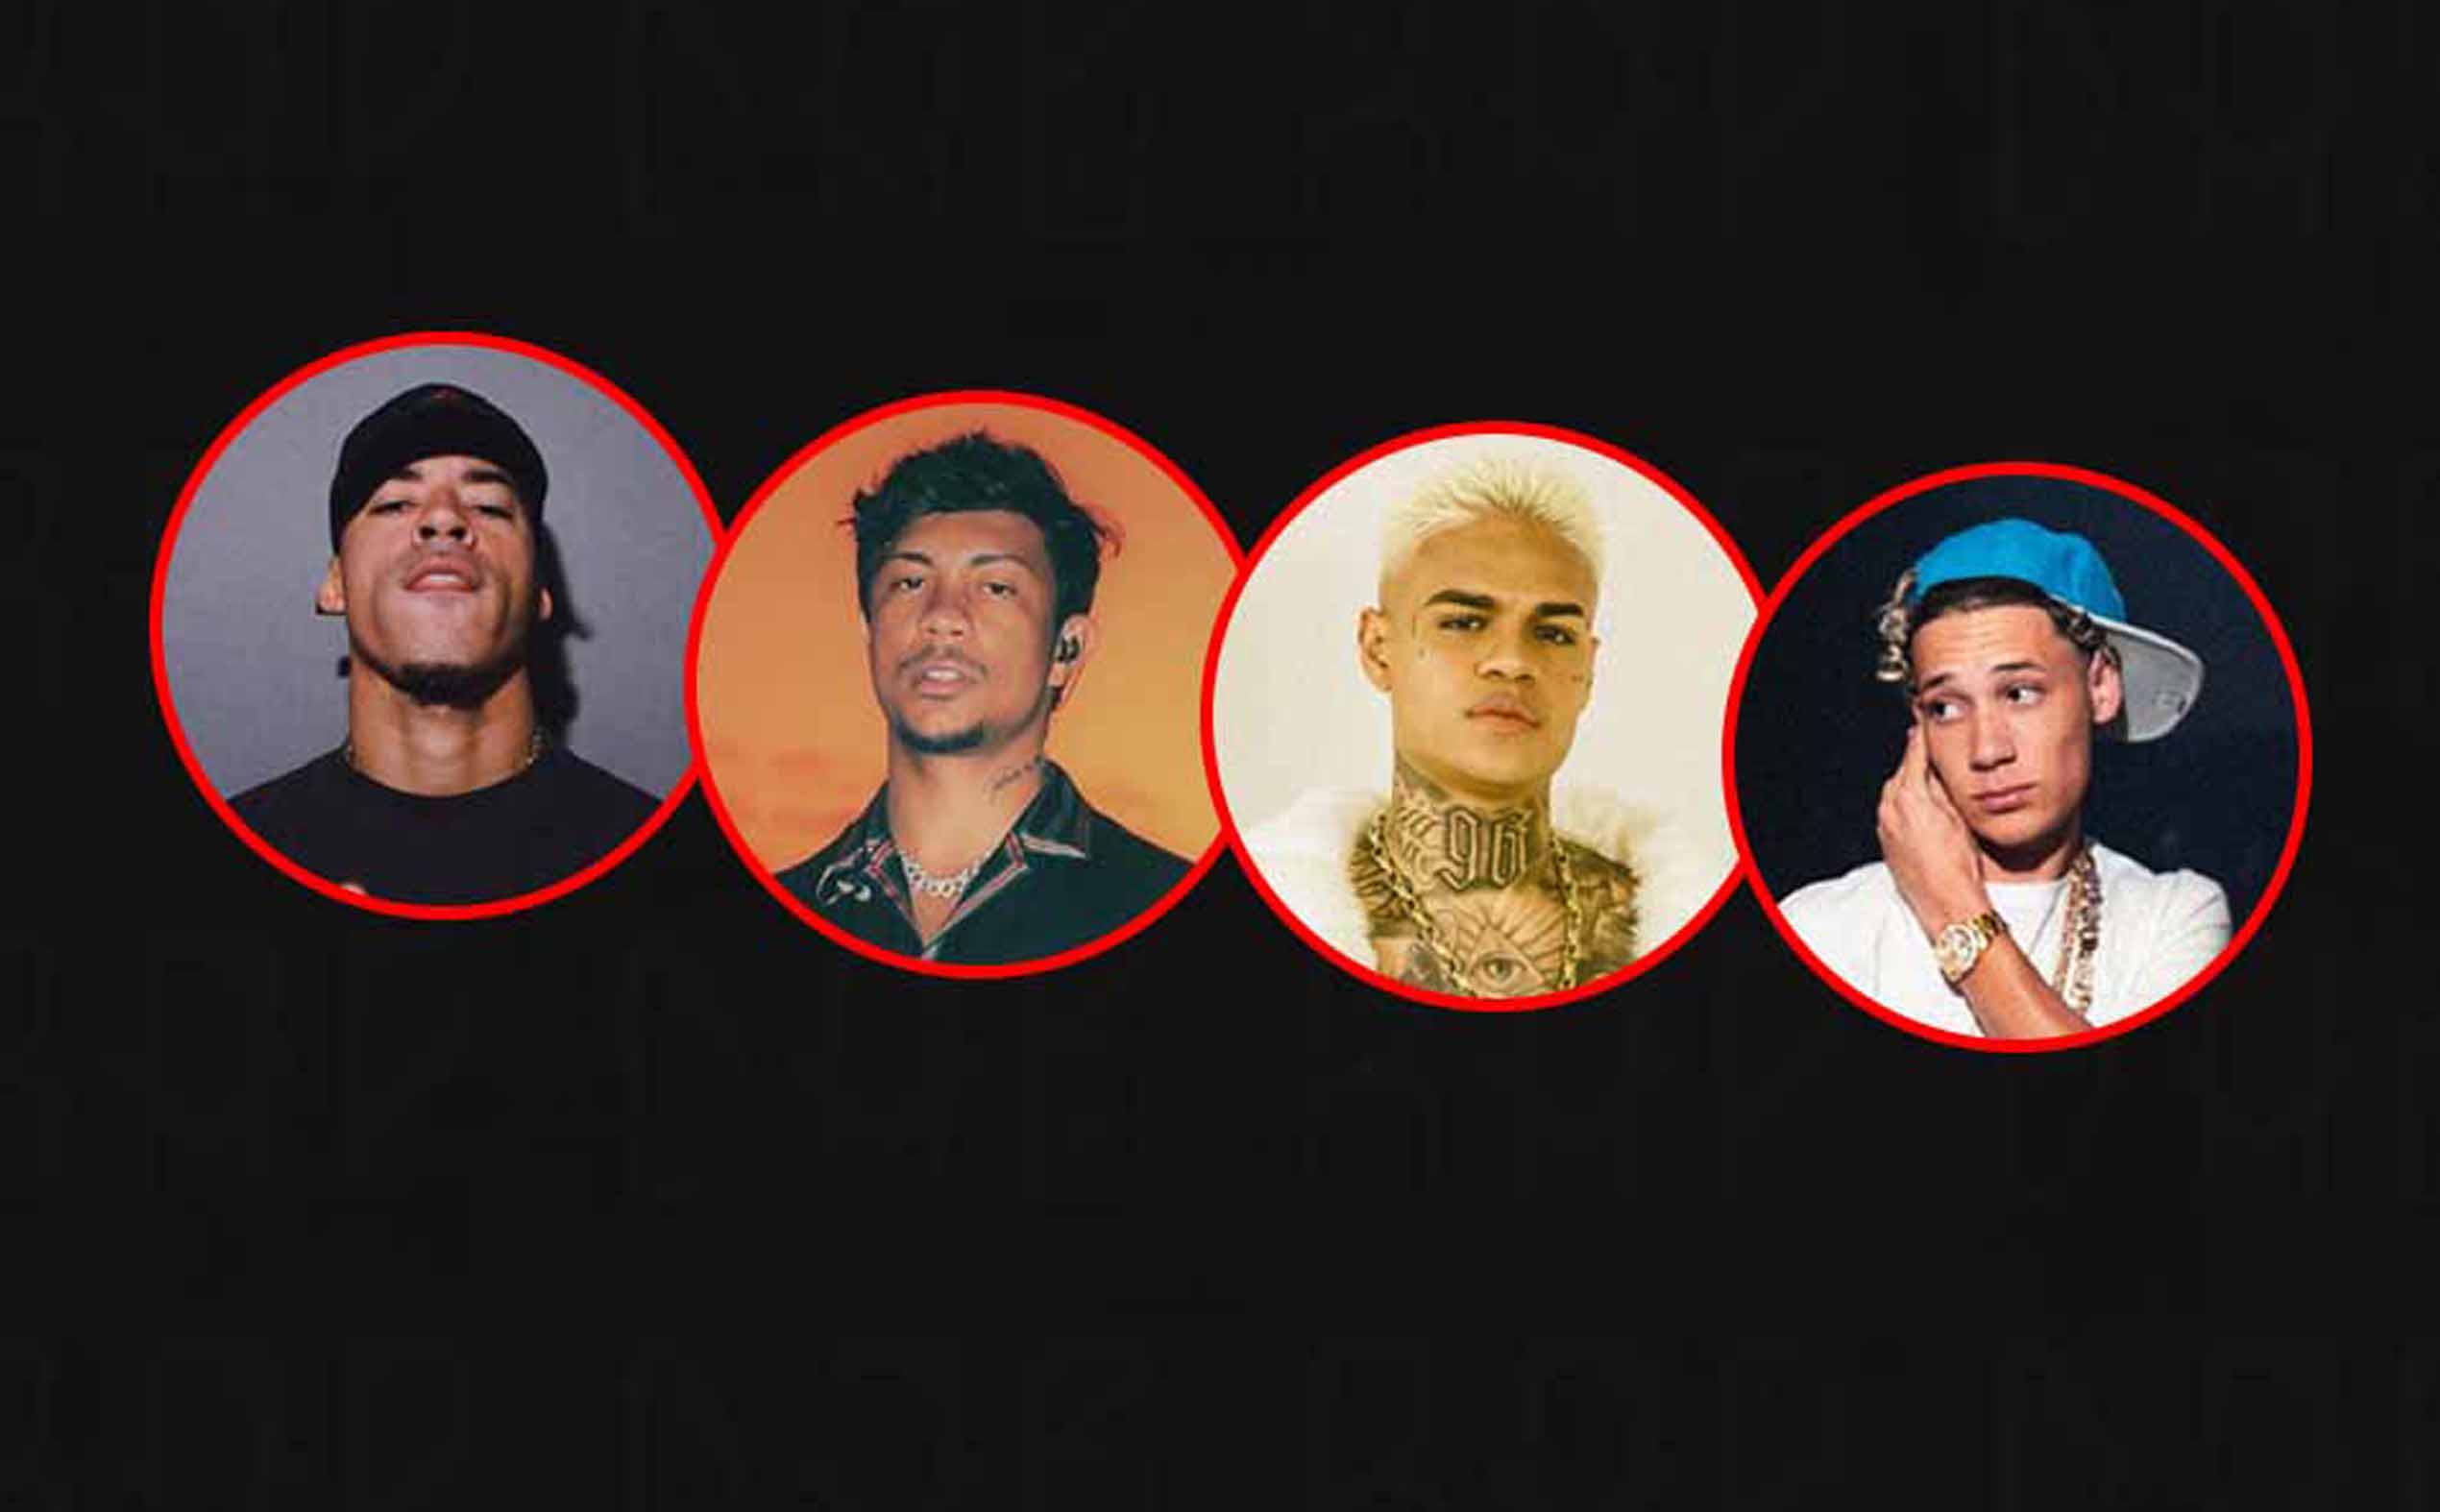 Top 5 Artistas mais ouvidos de Trap no Brasil - Murb Brasil